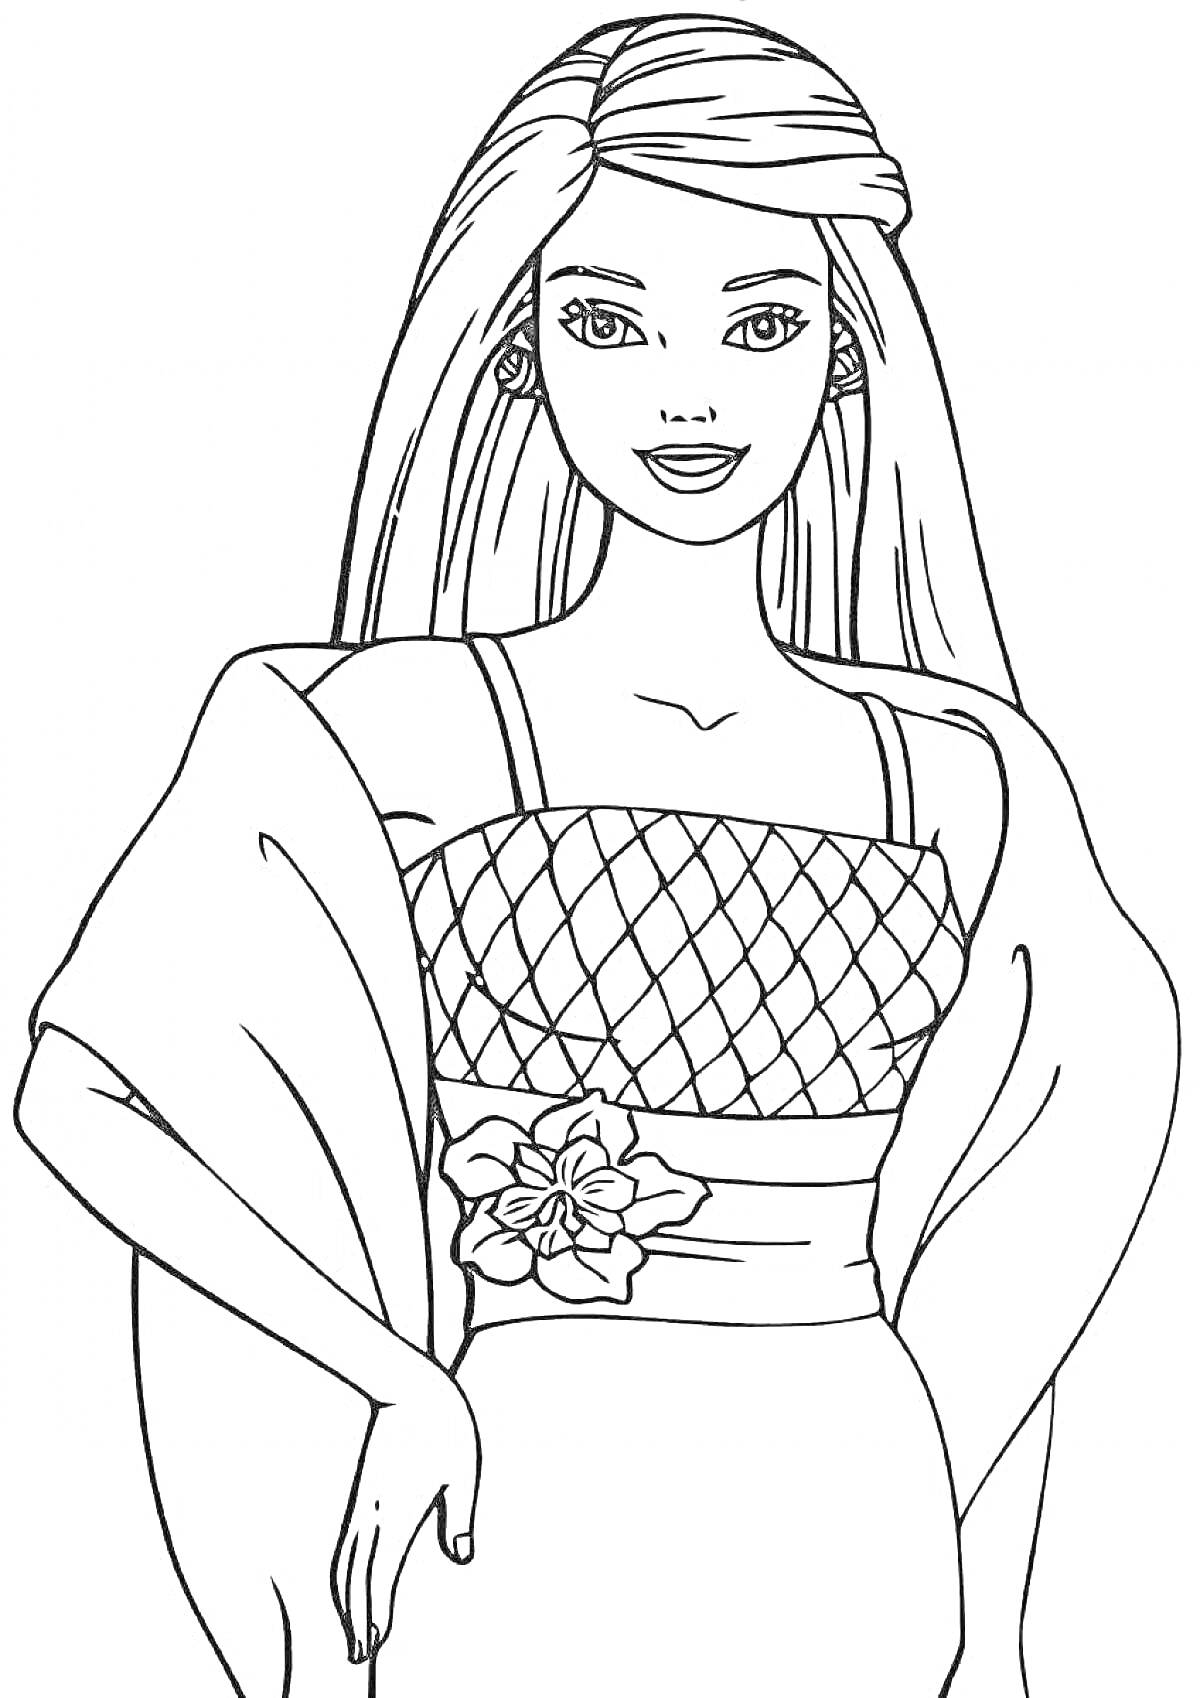 Раскраска Девушка в платье с сетчатым верхом и цветком на поясе, накидка, длинные волосы